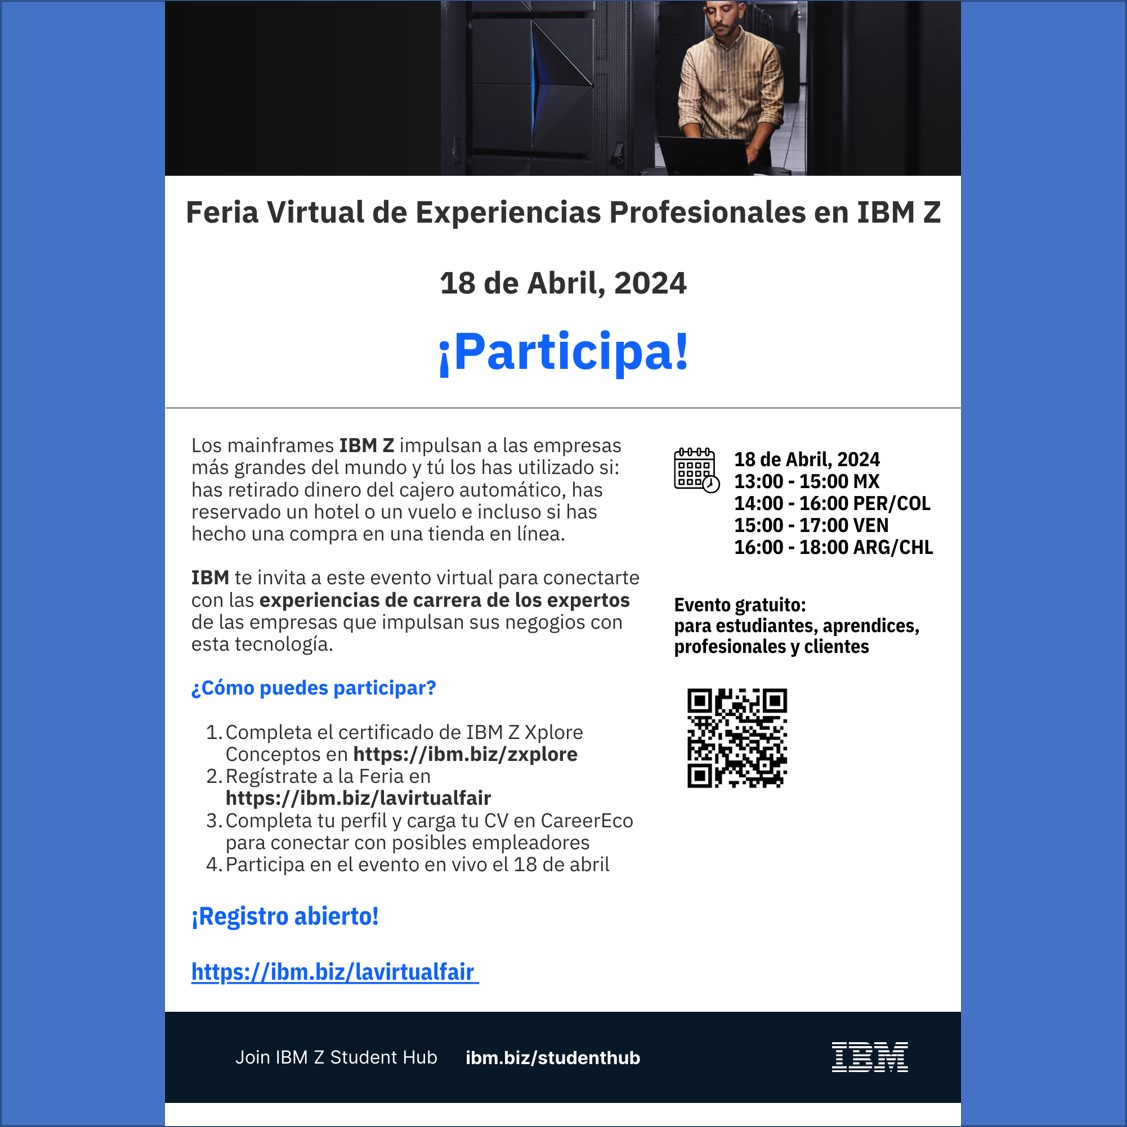 Feria Virtual de Experiencias Profesionales de IBM Z